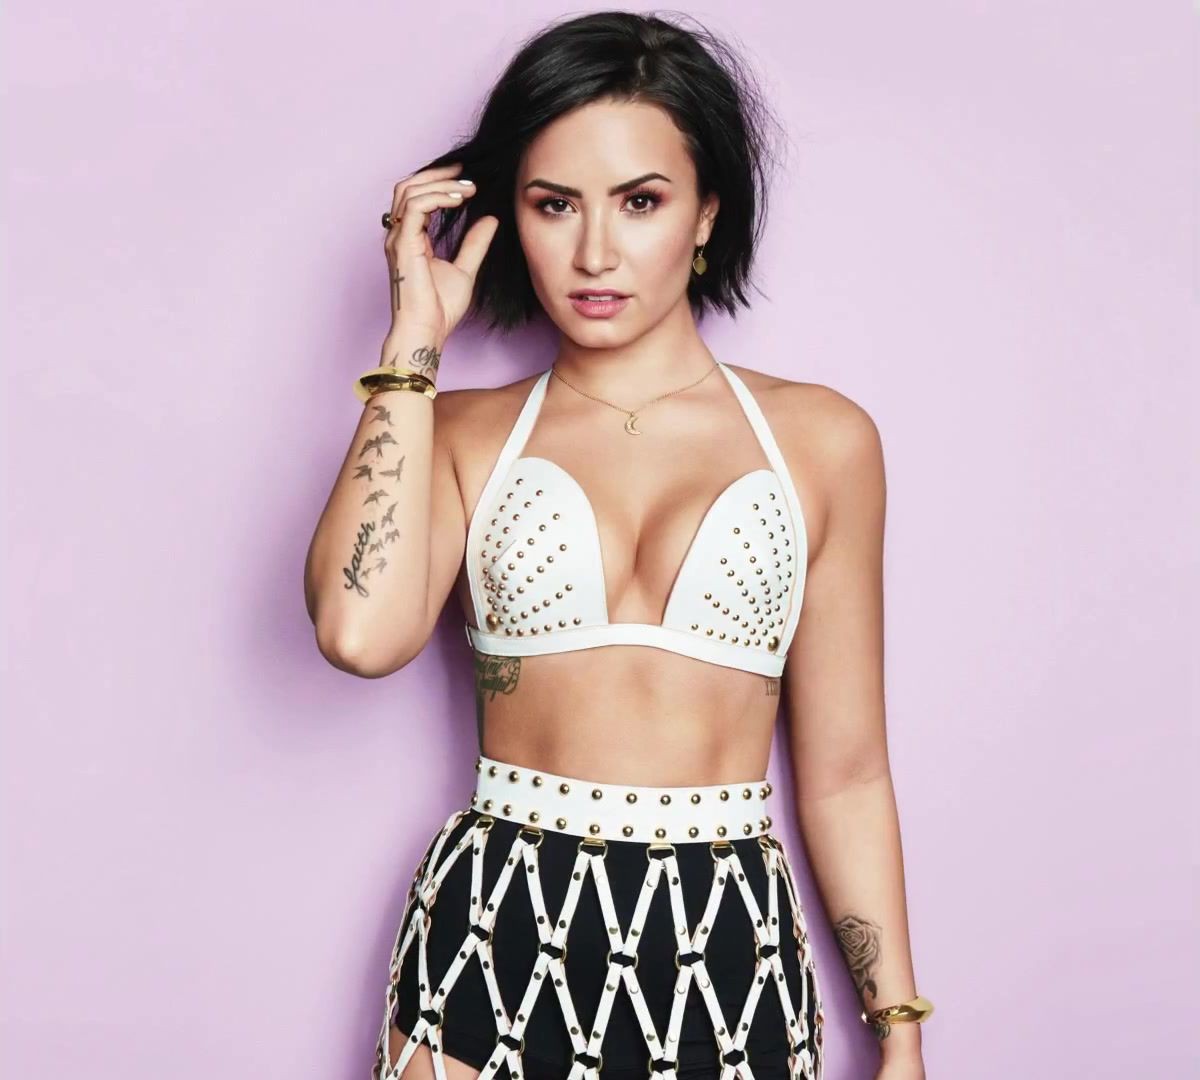 Demi Lovato Confident Demi Lovato Wants To Empower Women With Her New Album Confident Video